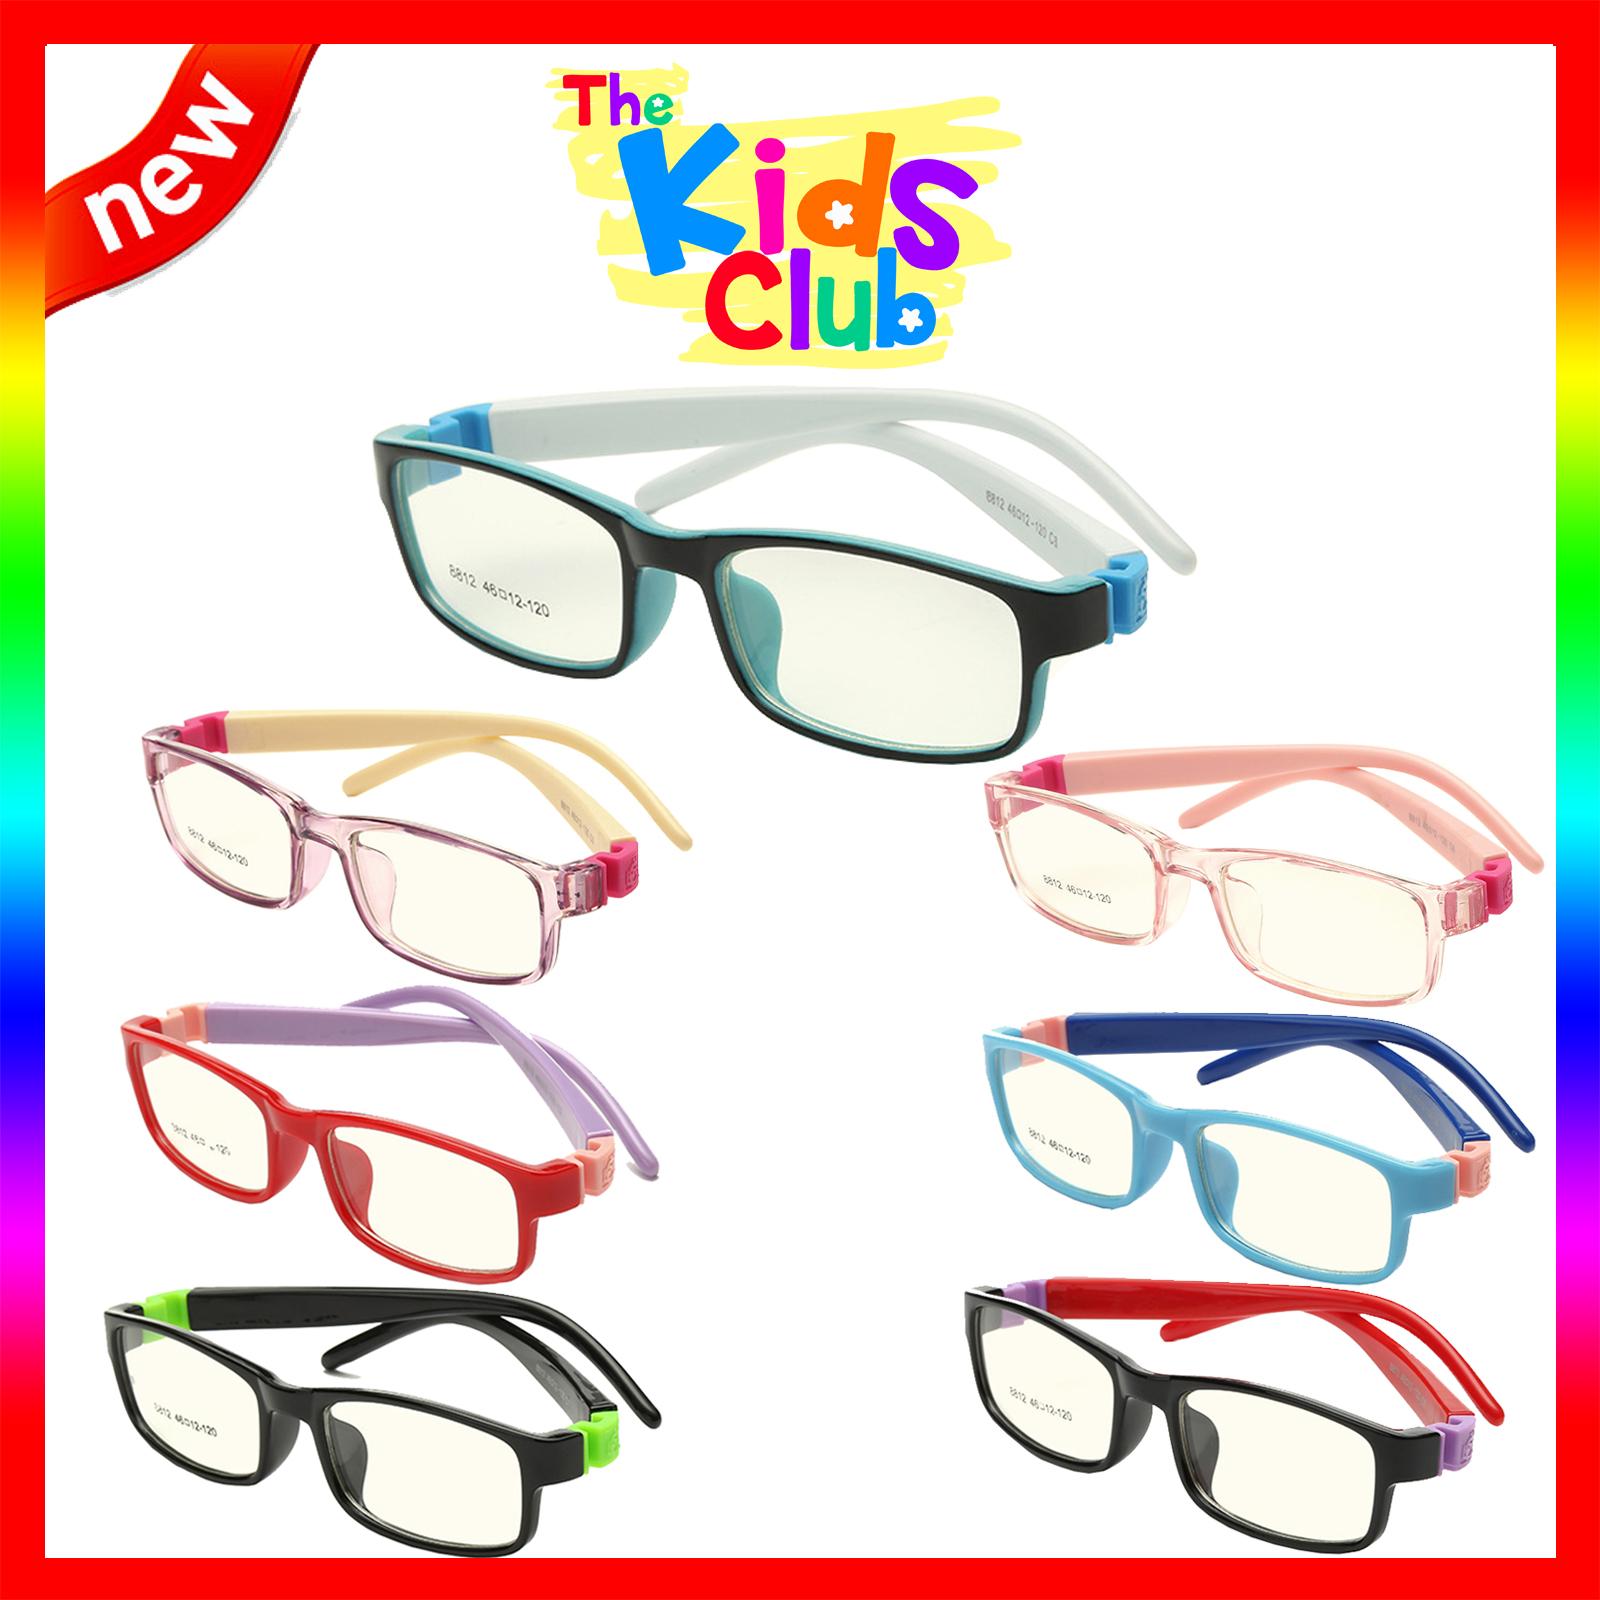 แว่นตาเกาหลีเด็ก Fashion Korea Children แว่นตาเด็ก รุ่น 8812 กรอบแว่นตาเด็ก Rectangle ทรงสี่เหลี่ยมผืนผ้า Eyeglass baby frame ( สำหรับตัดเลนส์ ) วัสดุ PC เบา ขาข้อต่อ Kid leg joints Plastic Grade A material Eyewear Top Glasses